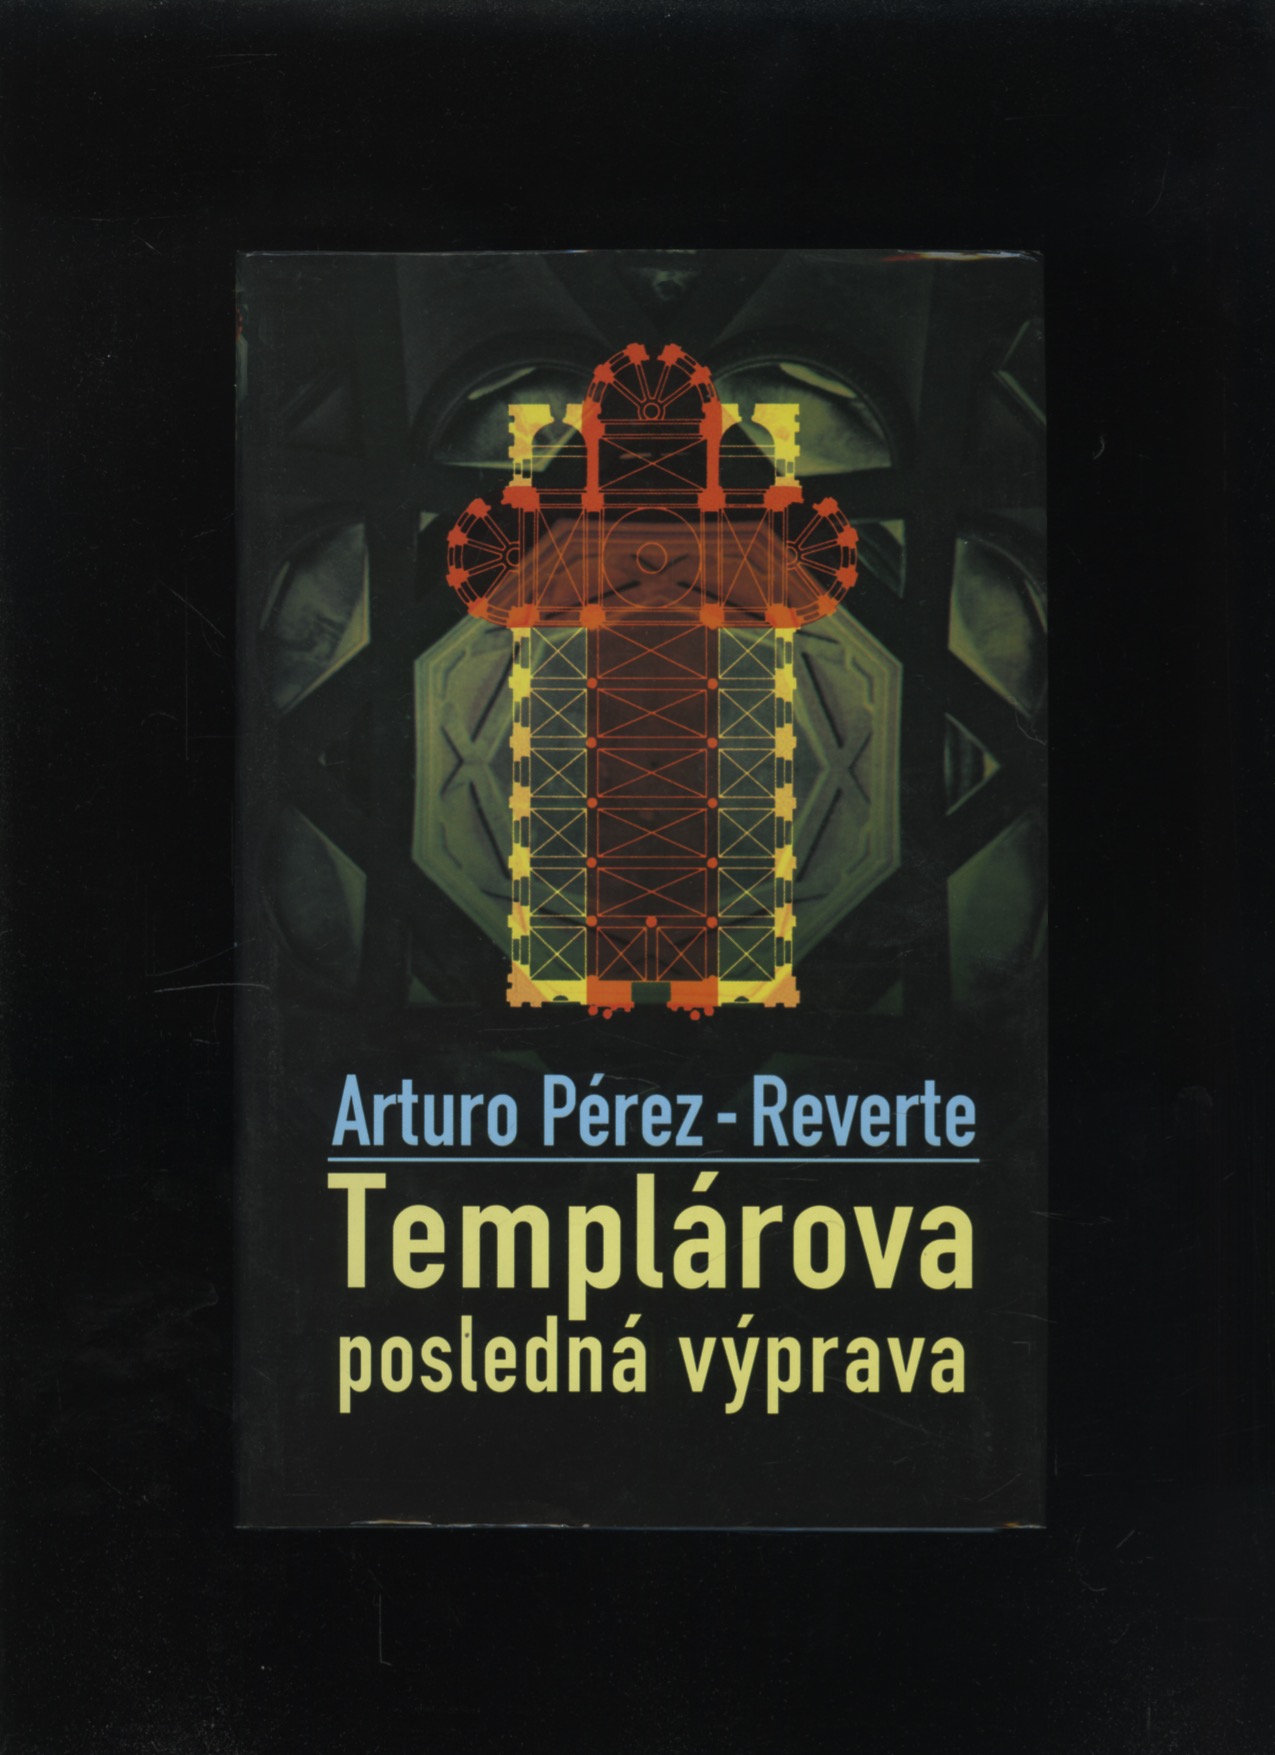 Templárova posledná výprava (Arturo Pérez-Reverte)